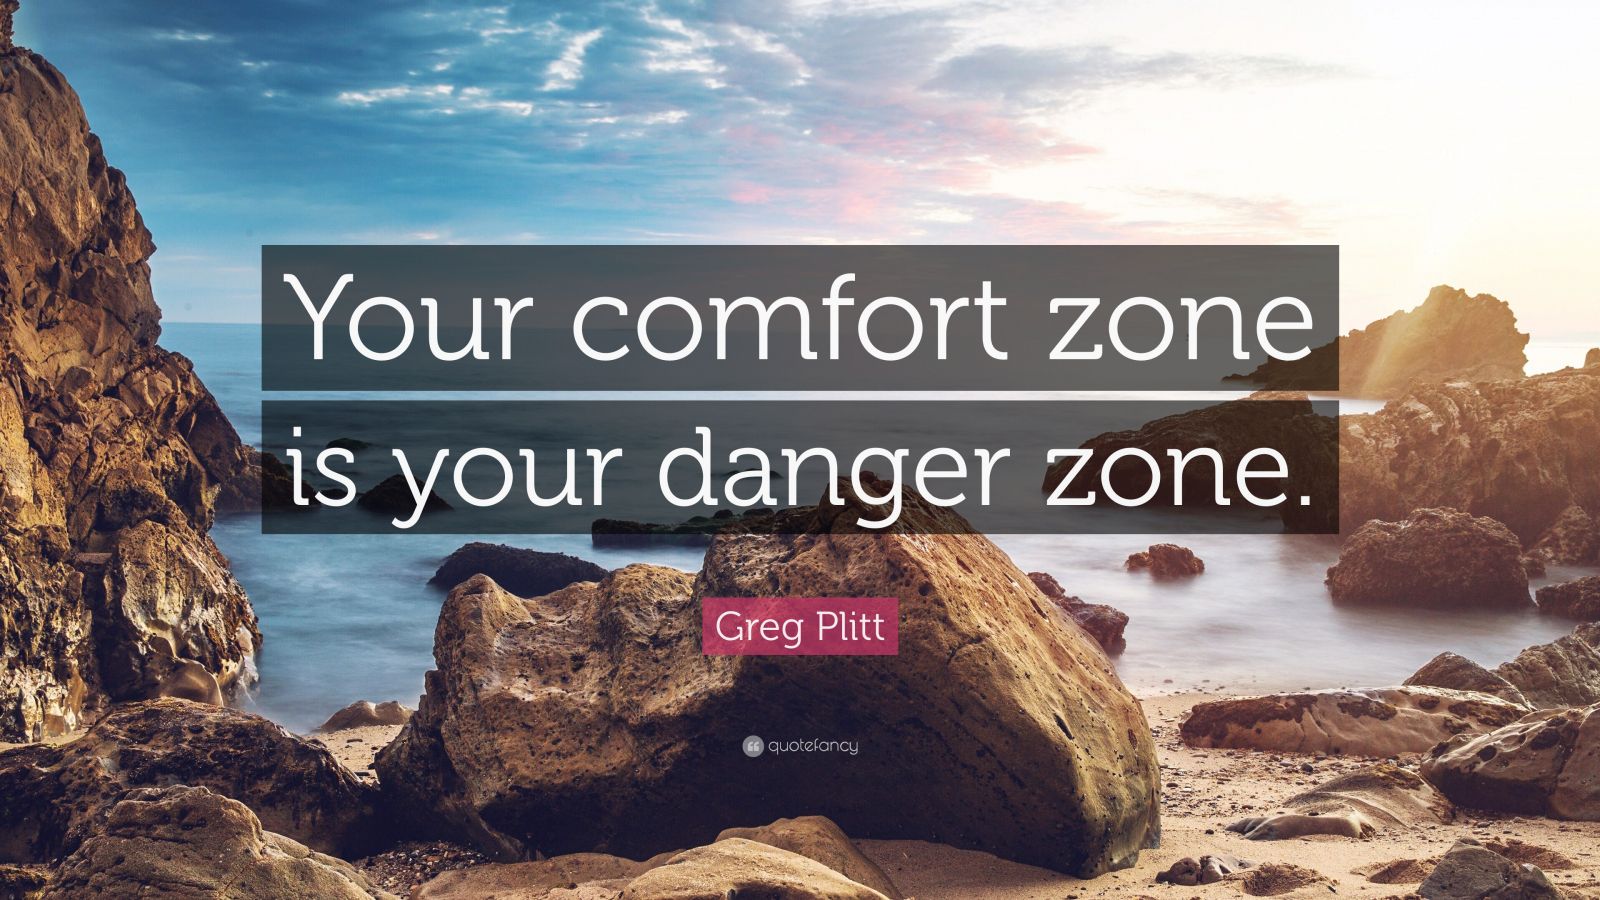 Greg Plitt Quote: “Your comfort zone is your danger zone.” (12